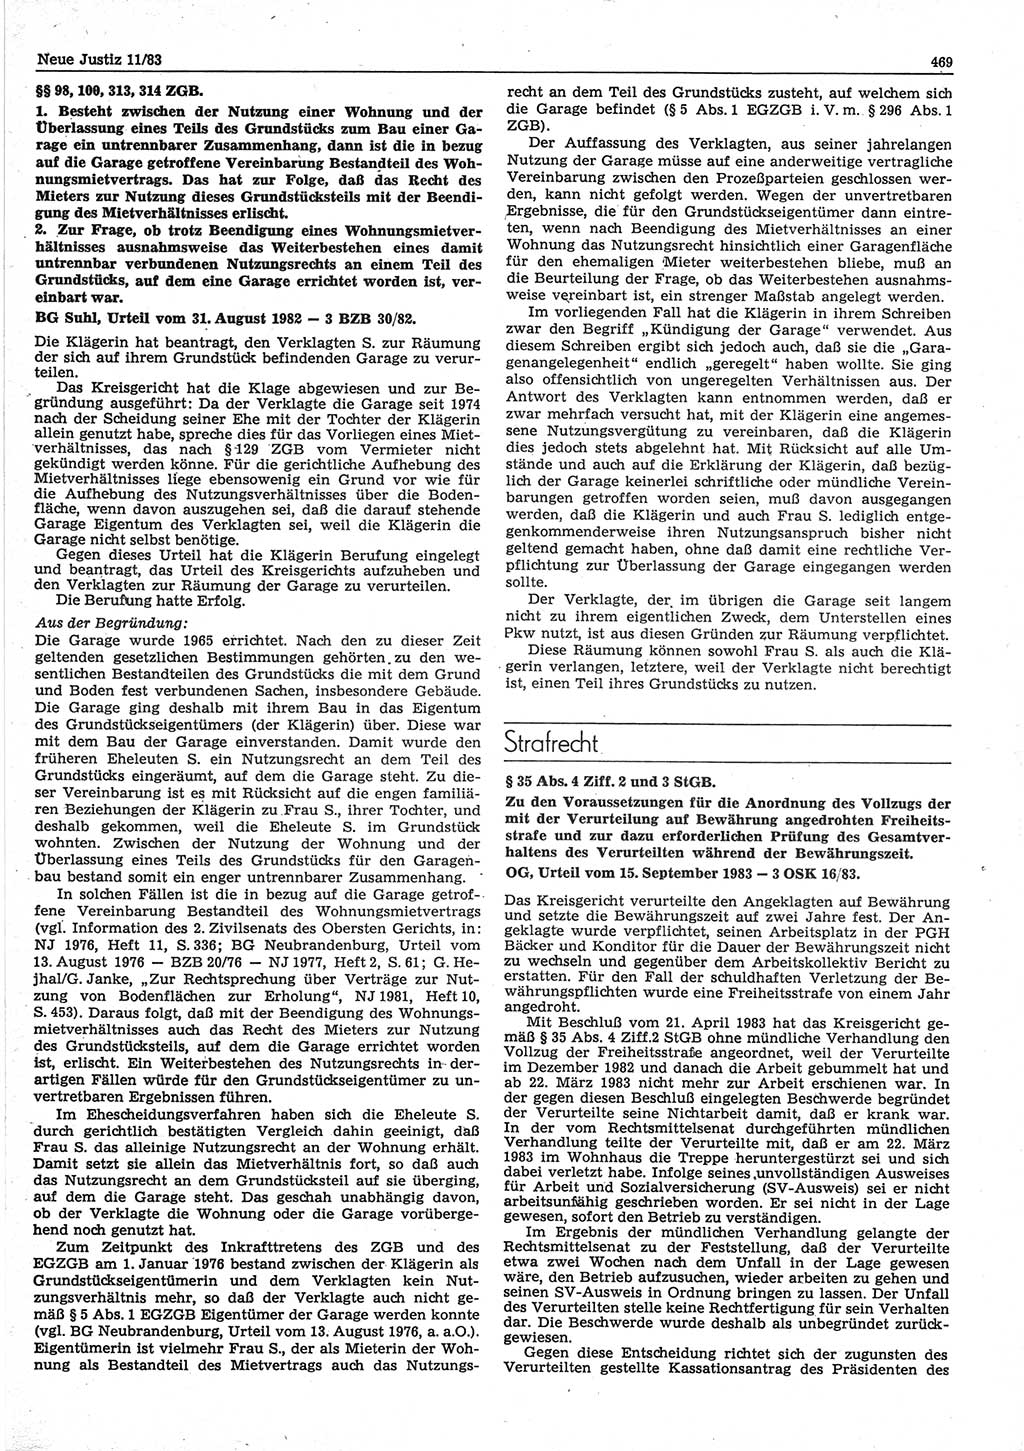 Neue Justiz (NJ), Zeitschrift für sozialistisches Recht und Gesetzlichkeit [Deutsche Demokratische Republik (DDR)], 37. Jahrgang 1983, Seite 469 (NJ DDR 1983, S. 469)